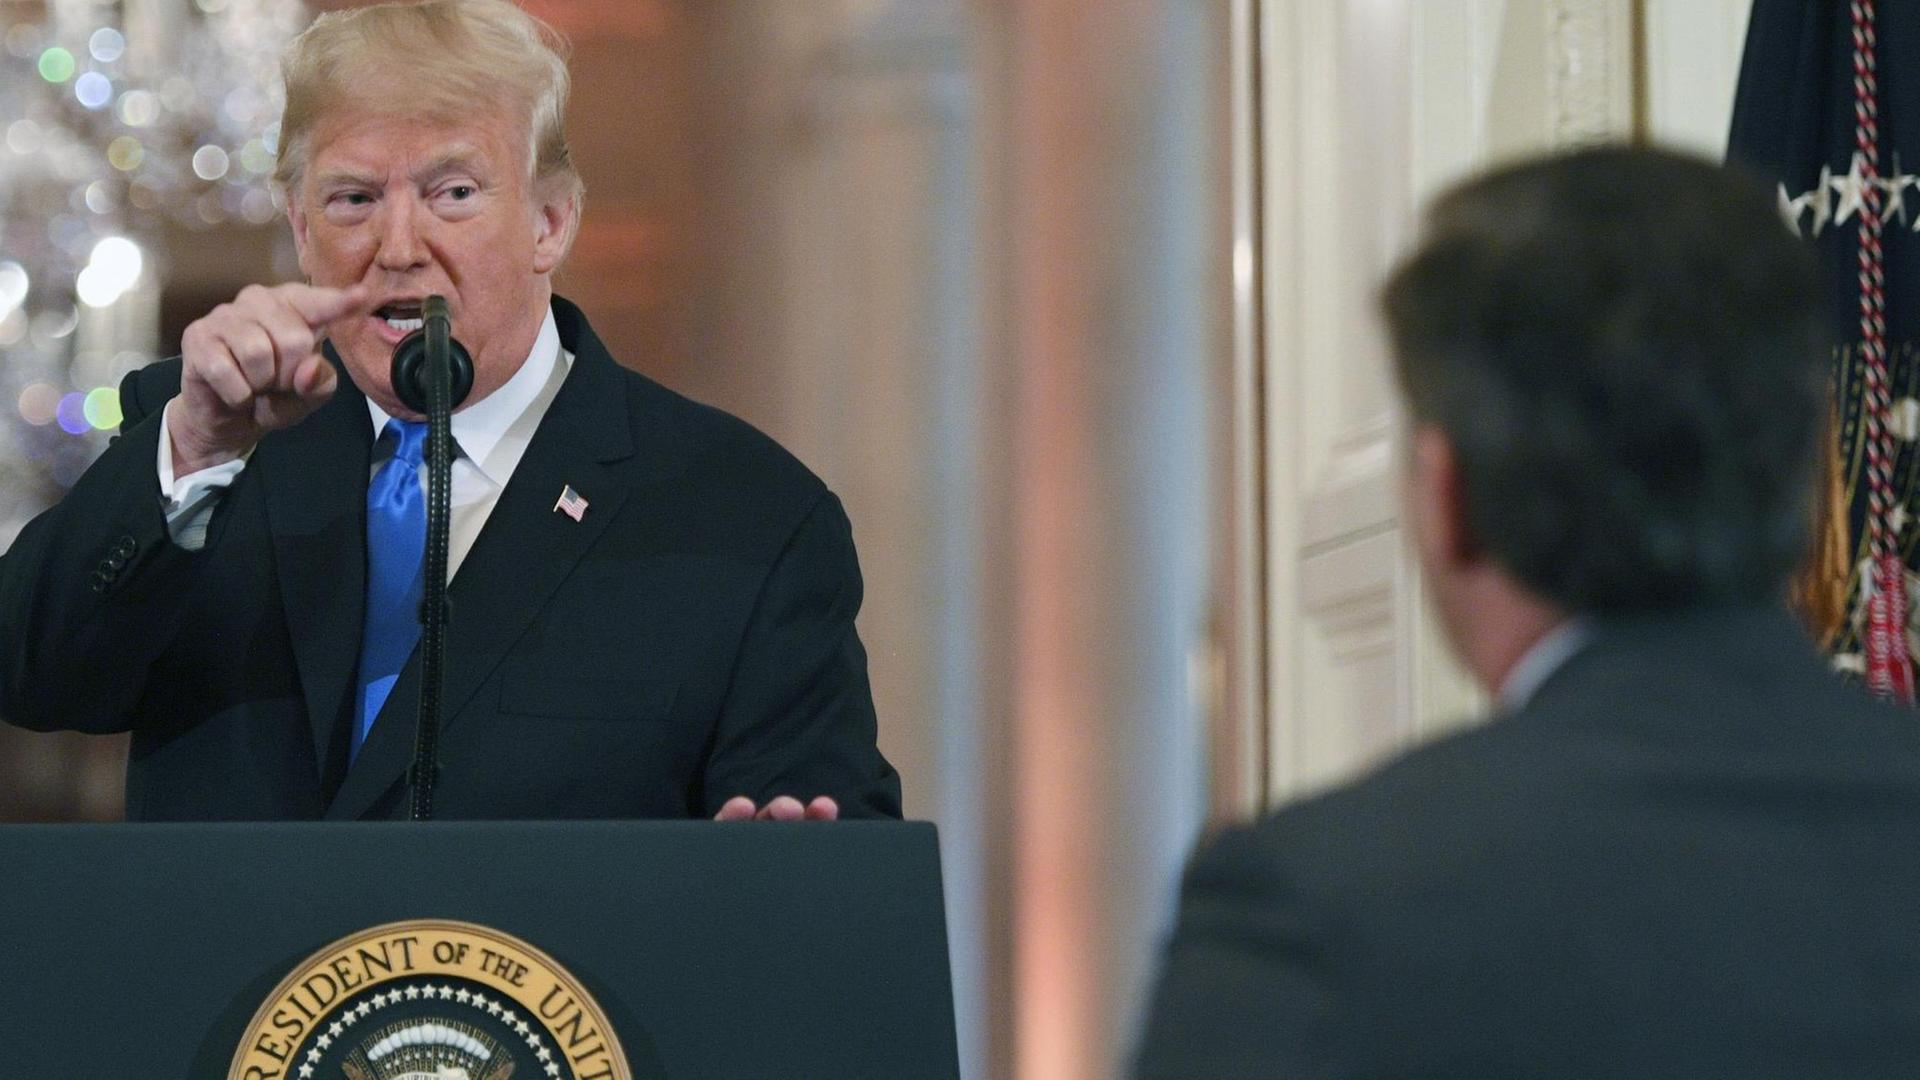 US-Präsident Trump steht hinter einem Mikrofon im Weißen Haus und zeigt mit dem Zeigefinger auf den CNN-Journalisten Jim Acosta, der zuvor eine Frage gestellt hatte.